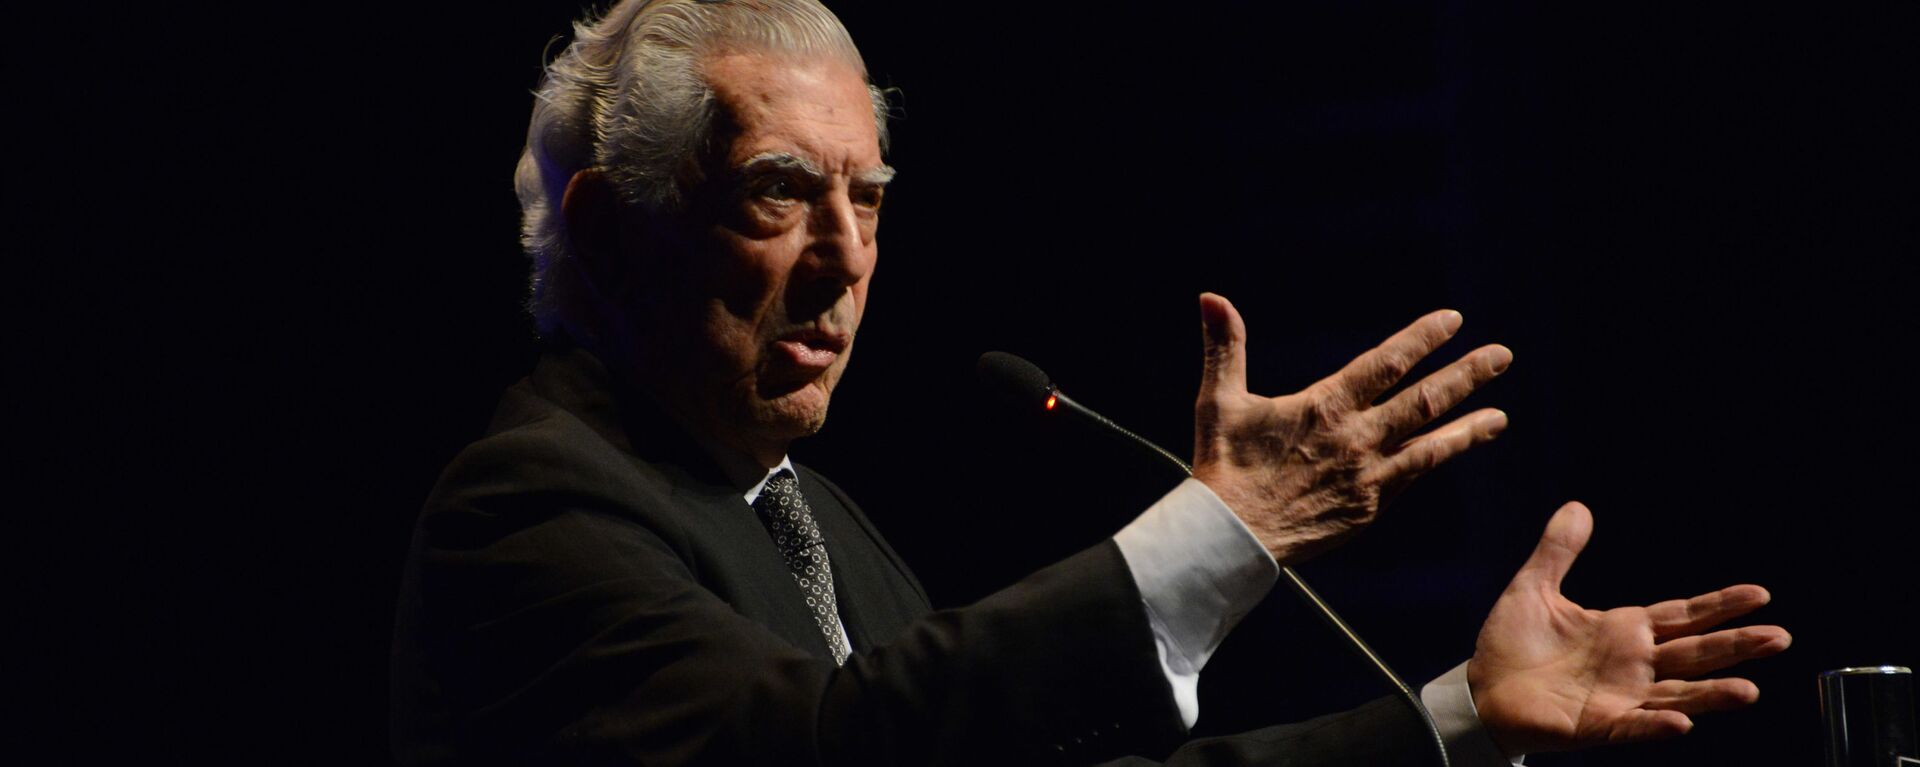 El escritor peruano Mario Vargas Llosa - Sputnik Mundo, 1920, 30.11.2019